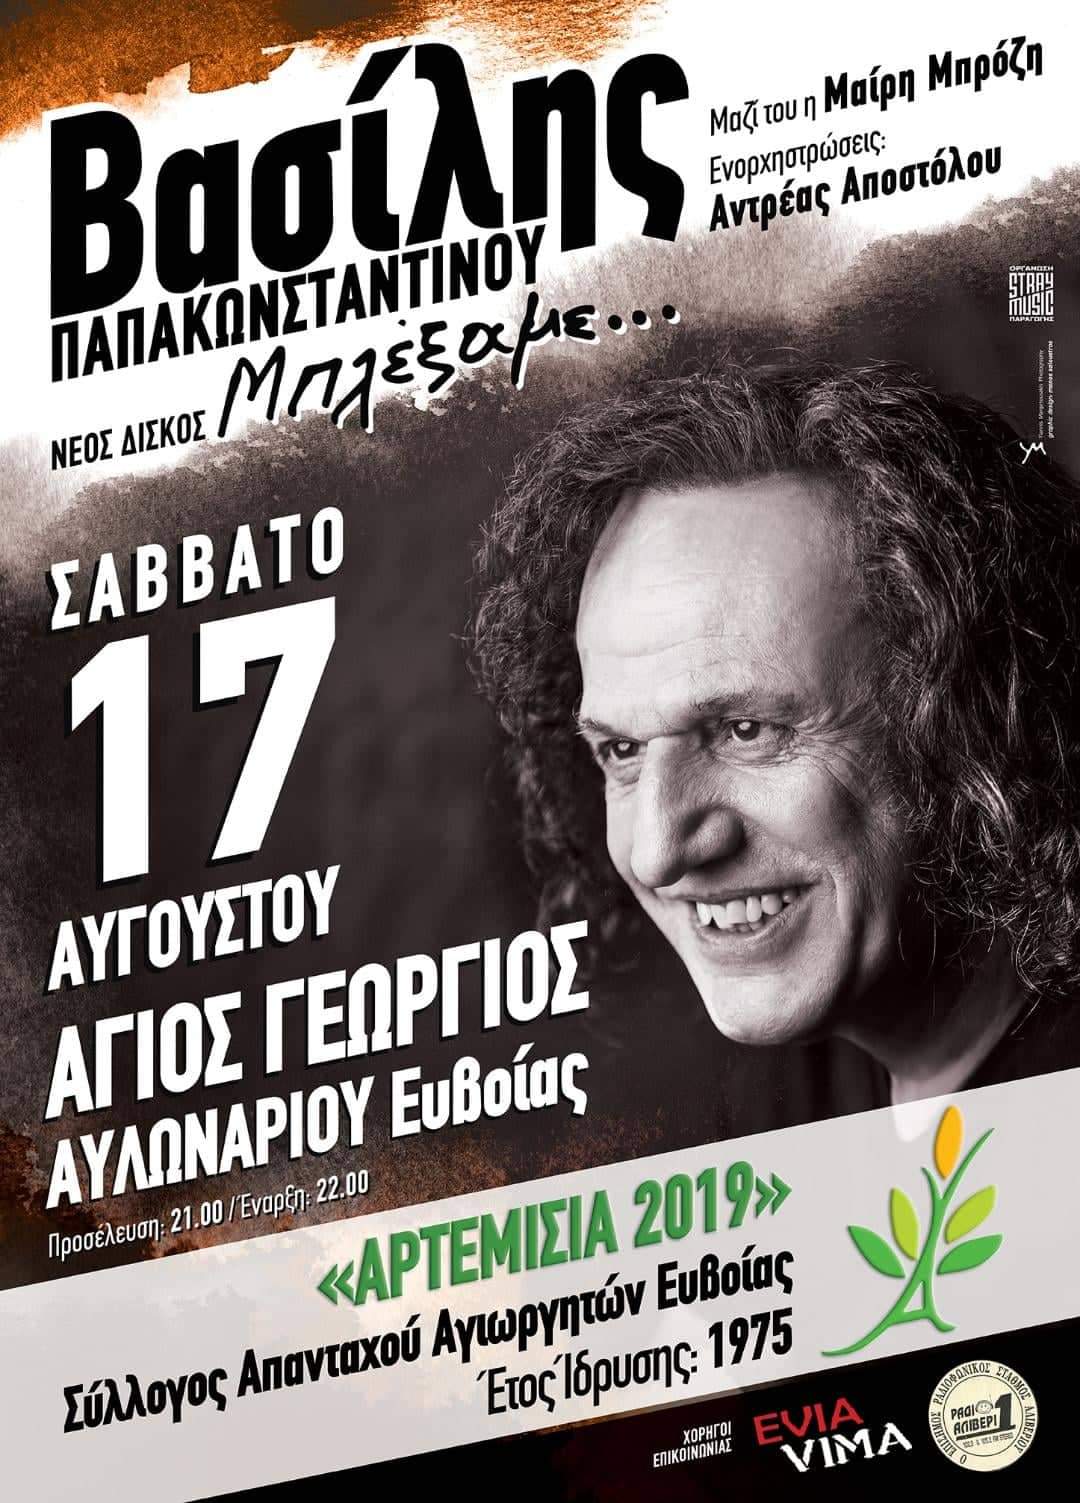 Μεγάλο ενδιαφέρον για την προπώληση εισιτηρίων- Ο Βασίλης Παπακωνσταντίνου στα “ΑΤΡΕΜΙΣΙΑ 2019”